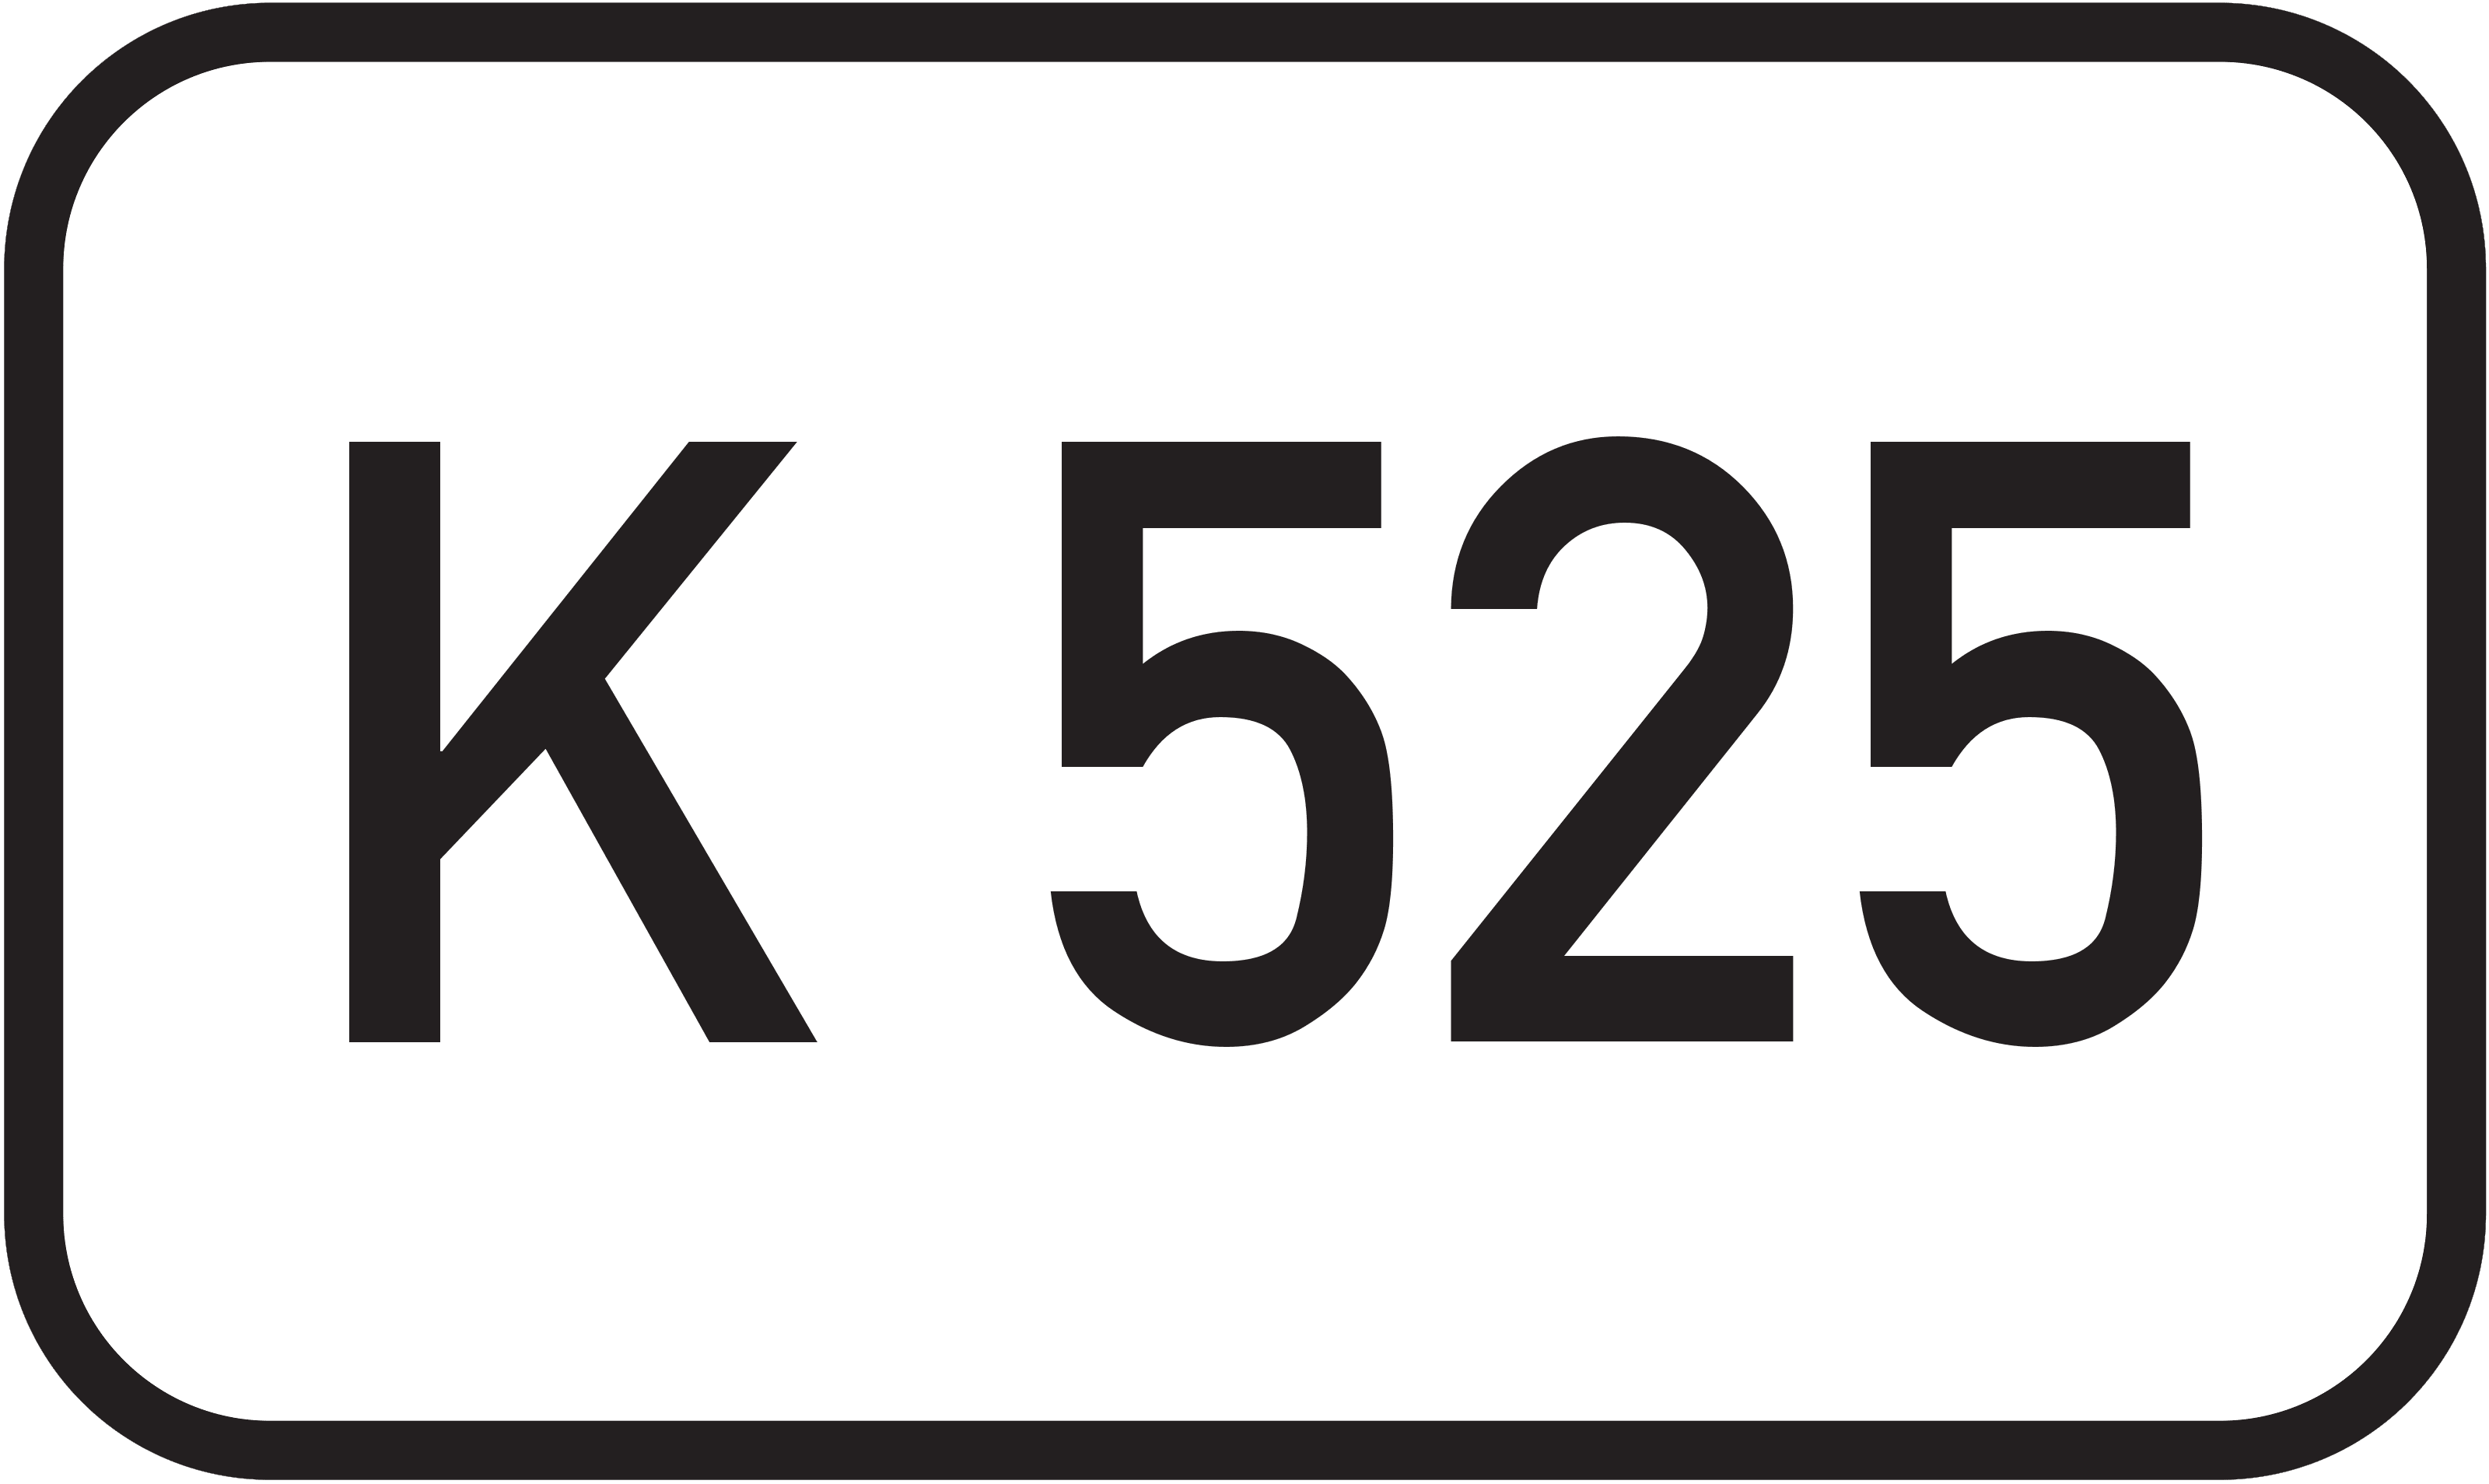 Bundesstraße K 525